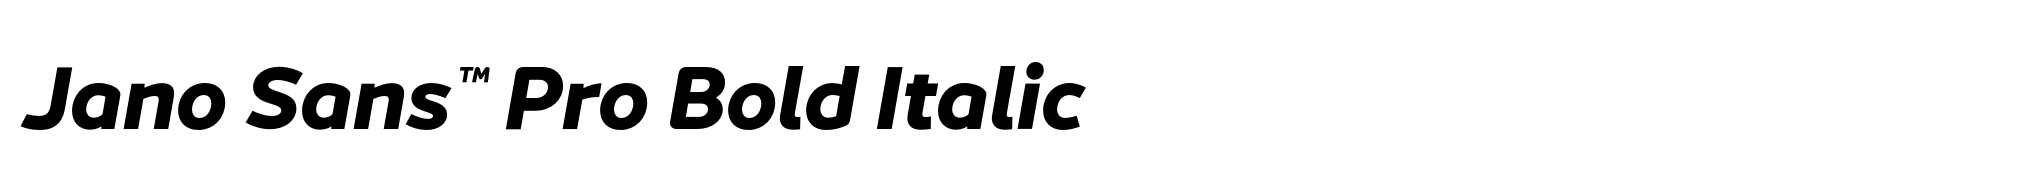 Jano Sans™ Pro Bold Italic image